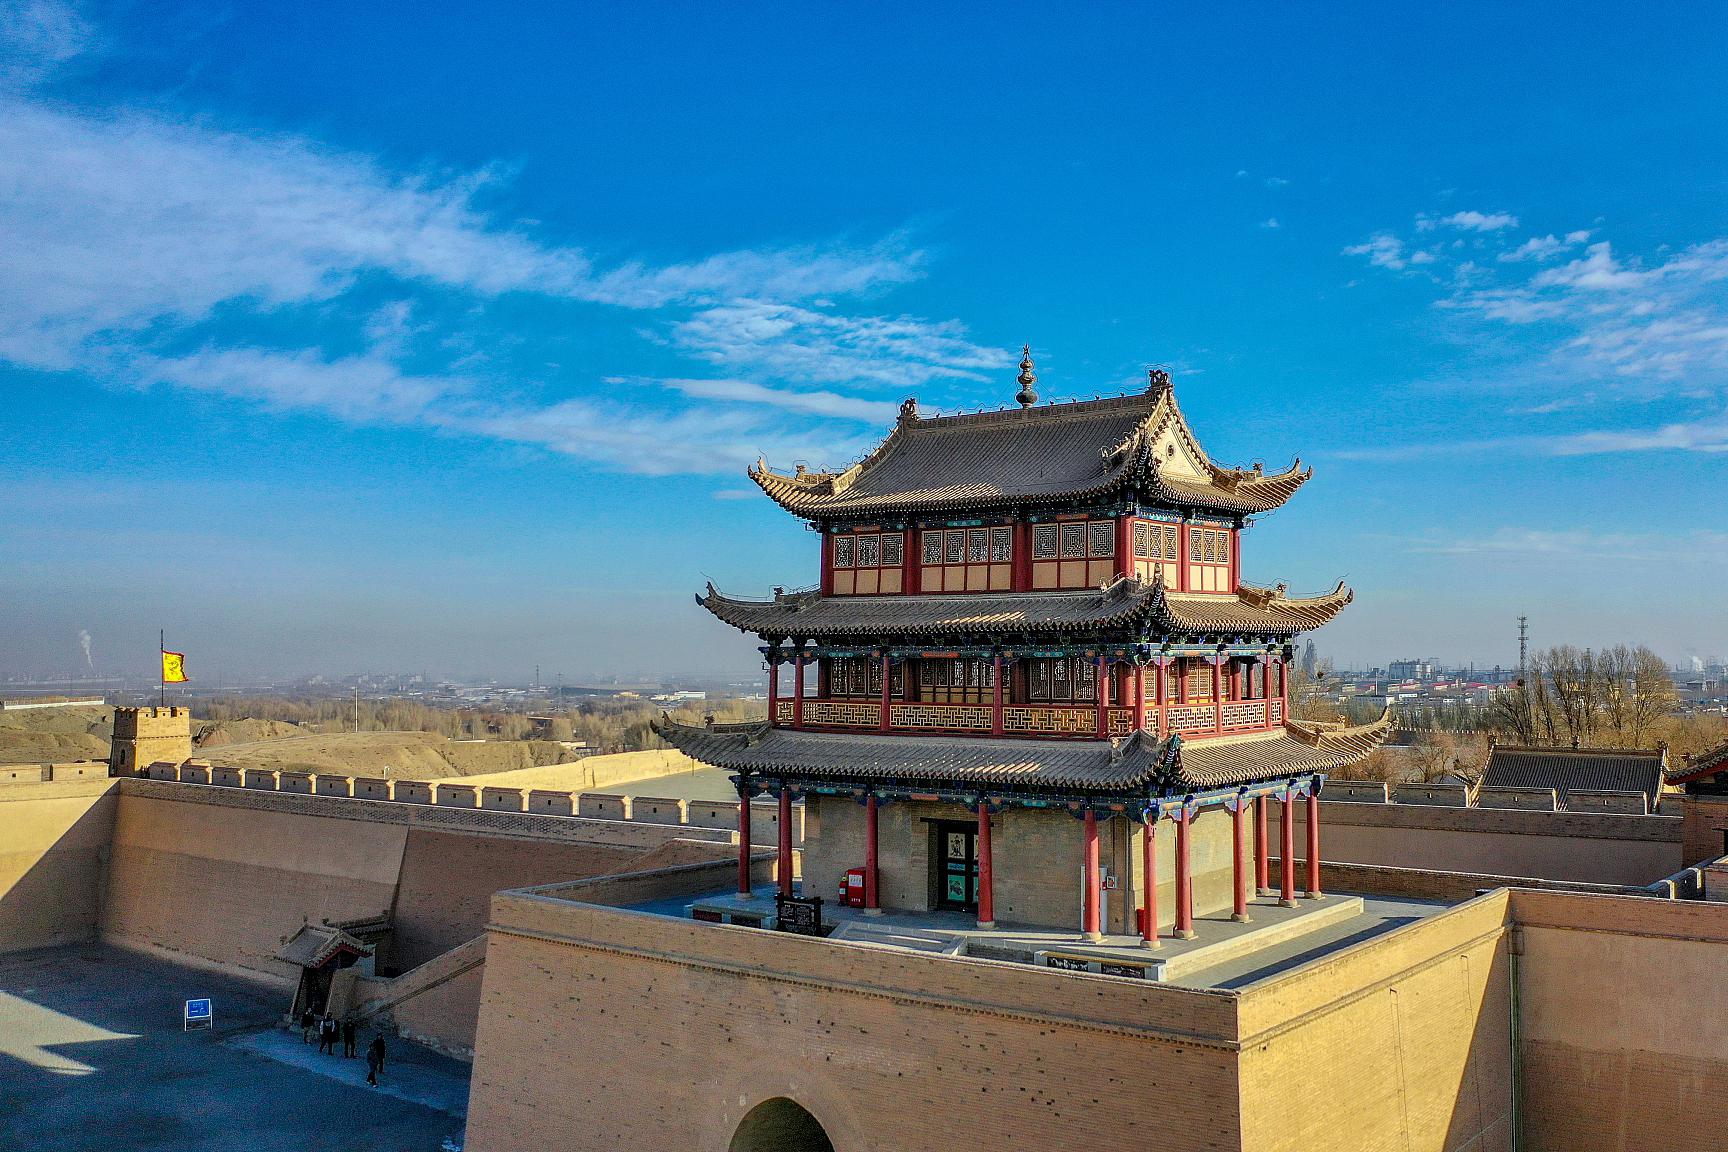 甘肃的几个5a级景区 甘肃,位于中国西北地区的中心地带,拥有悠久的